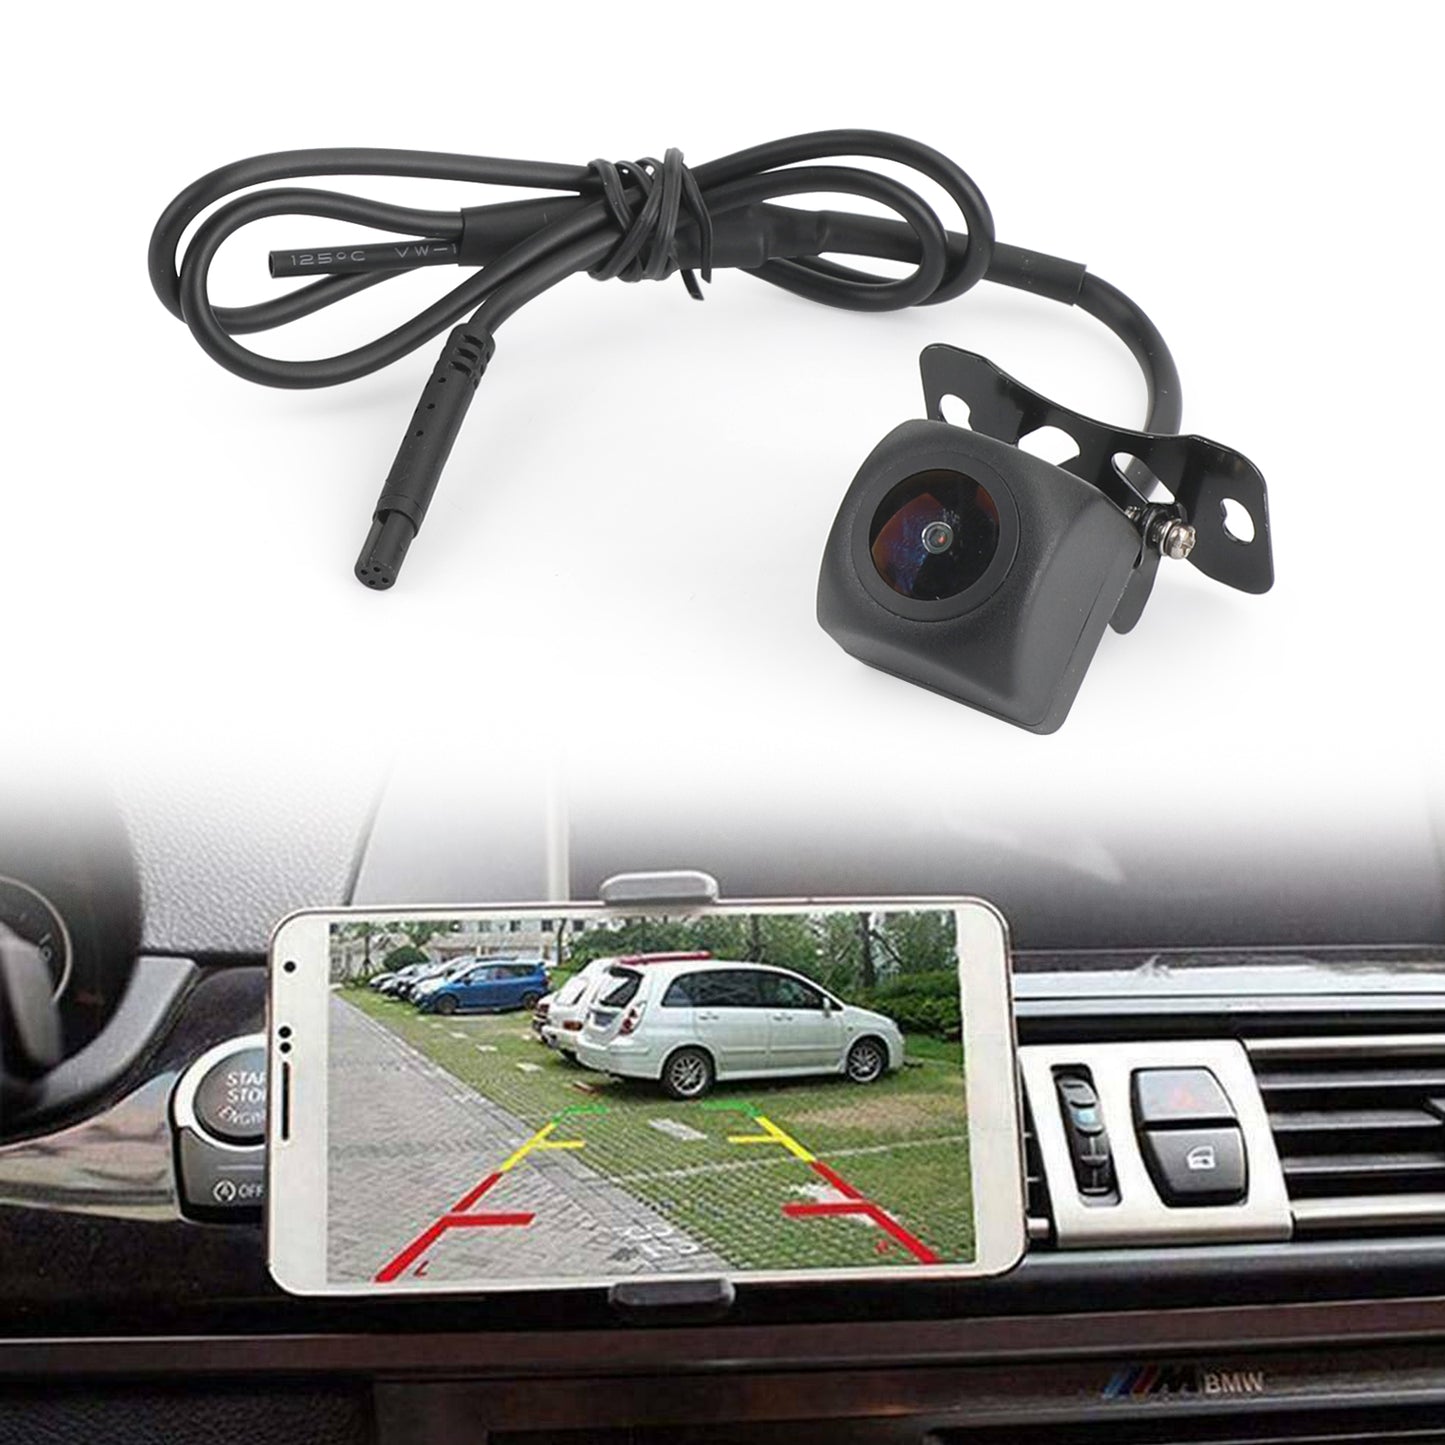 175 ° WiFi vue arrière de voiture caméra de recul caméra sans fil de sauvegarde pour iPhone Android